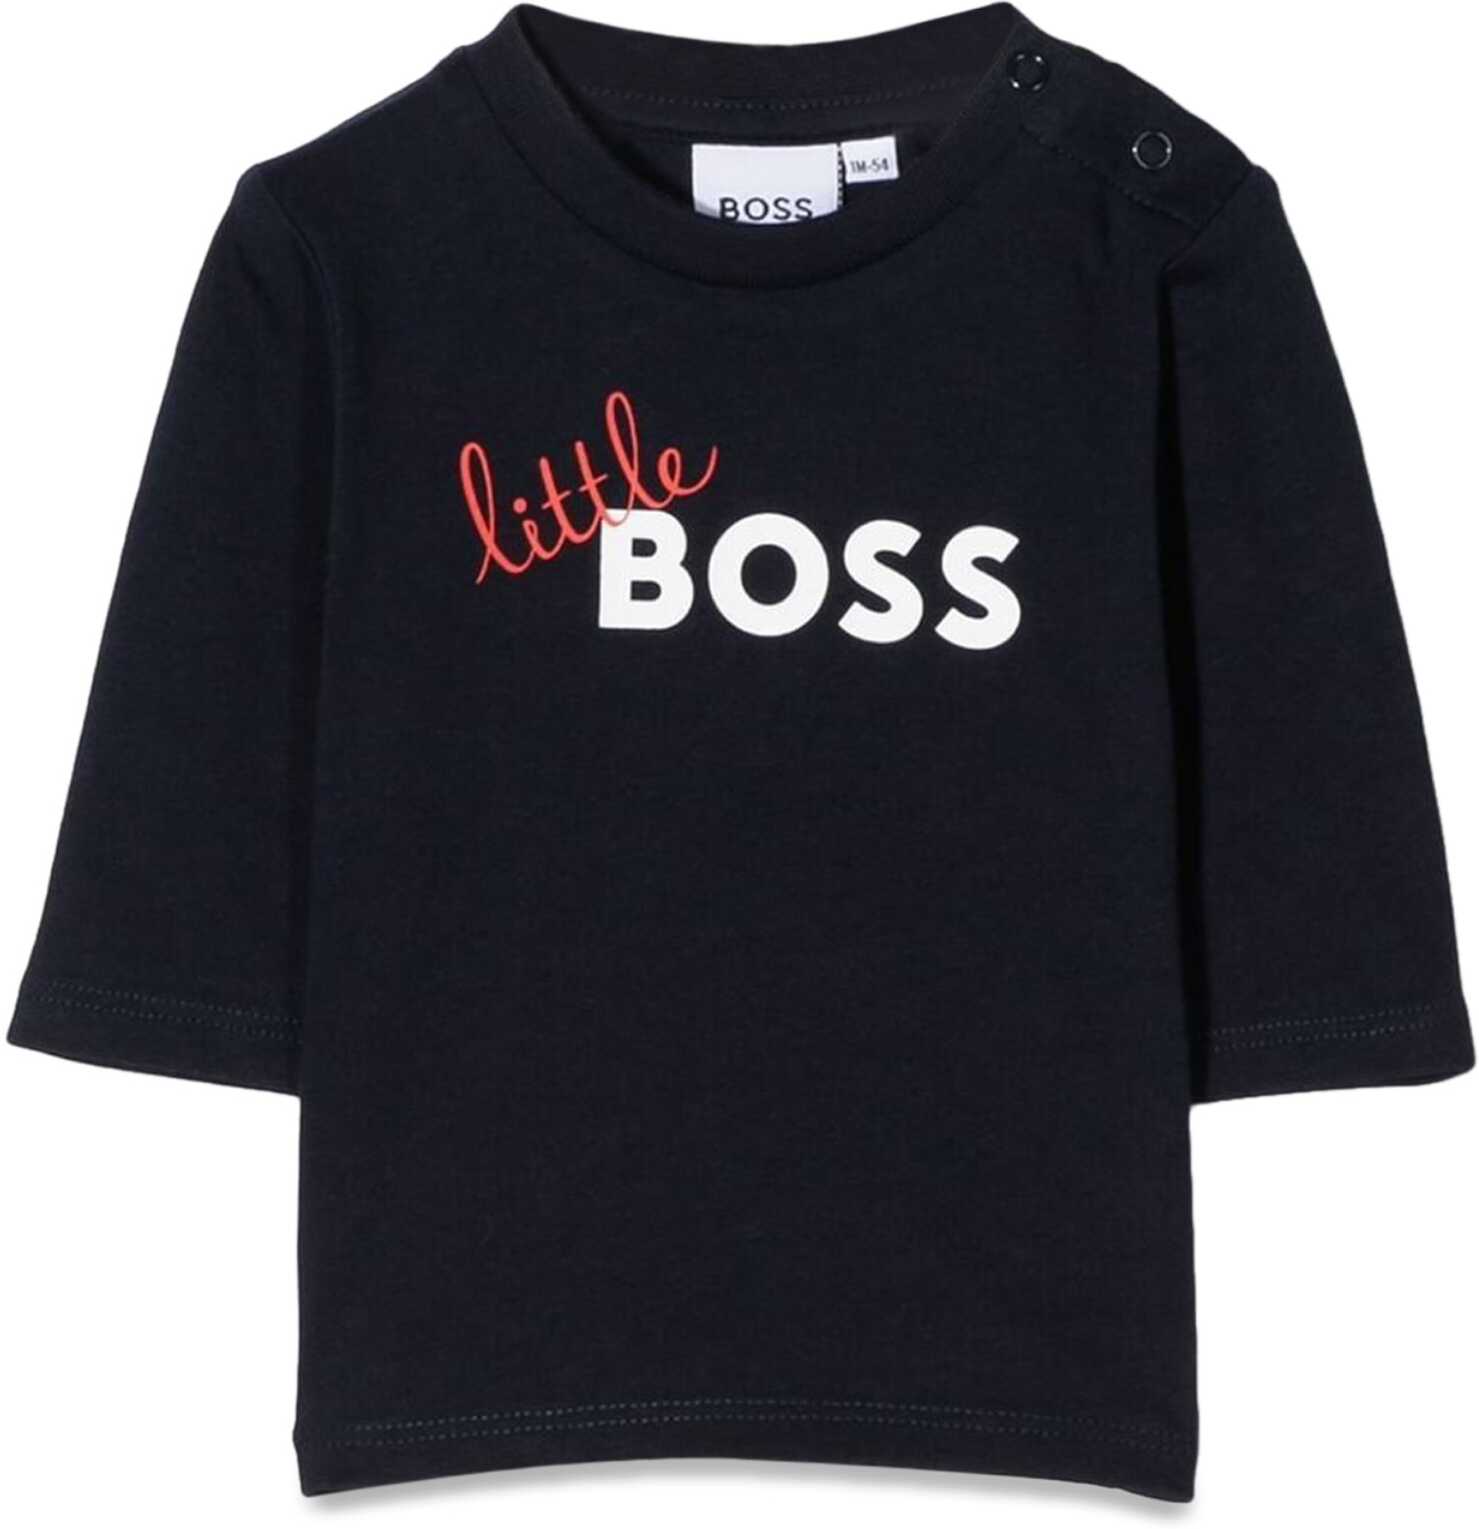 Hugo Boss M/L Little Boss T-Shirt BLUE